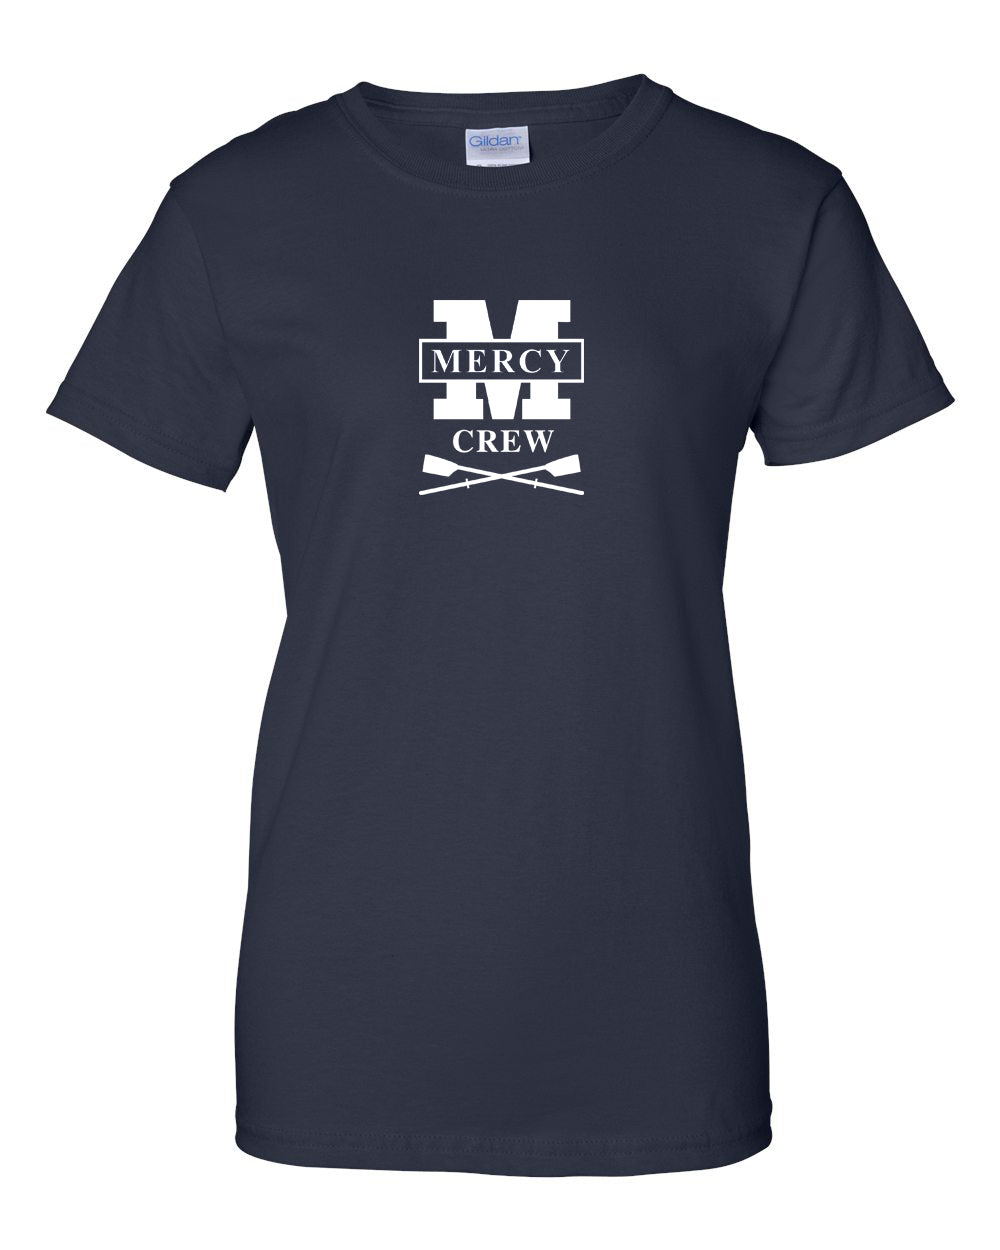 100% Cotton Mercy Crew Women's Team Spirit T-Shirt